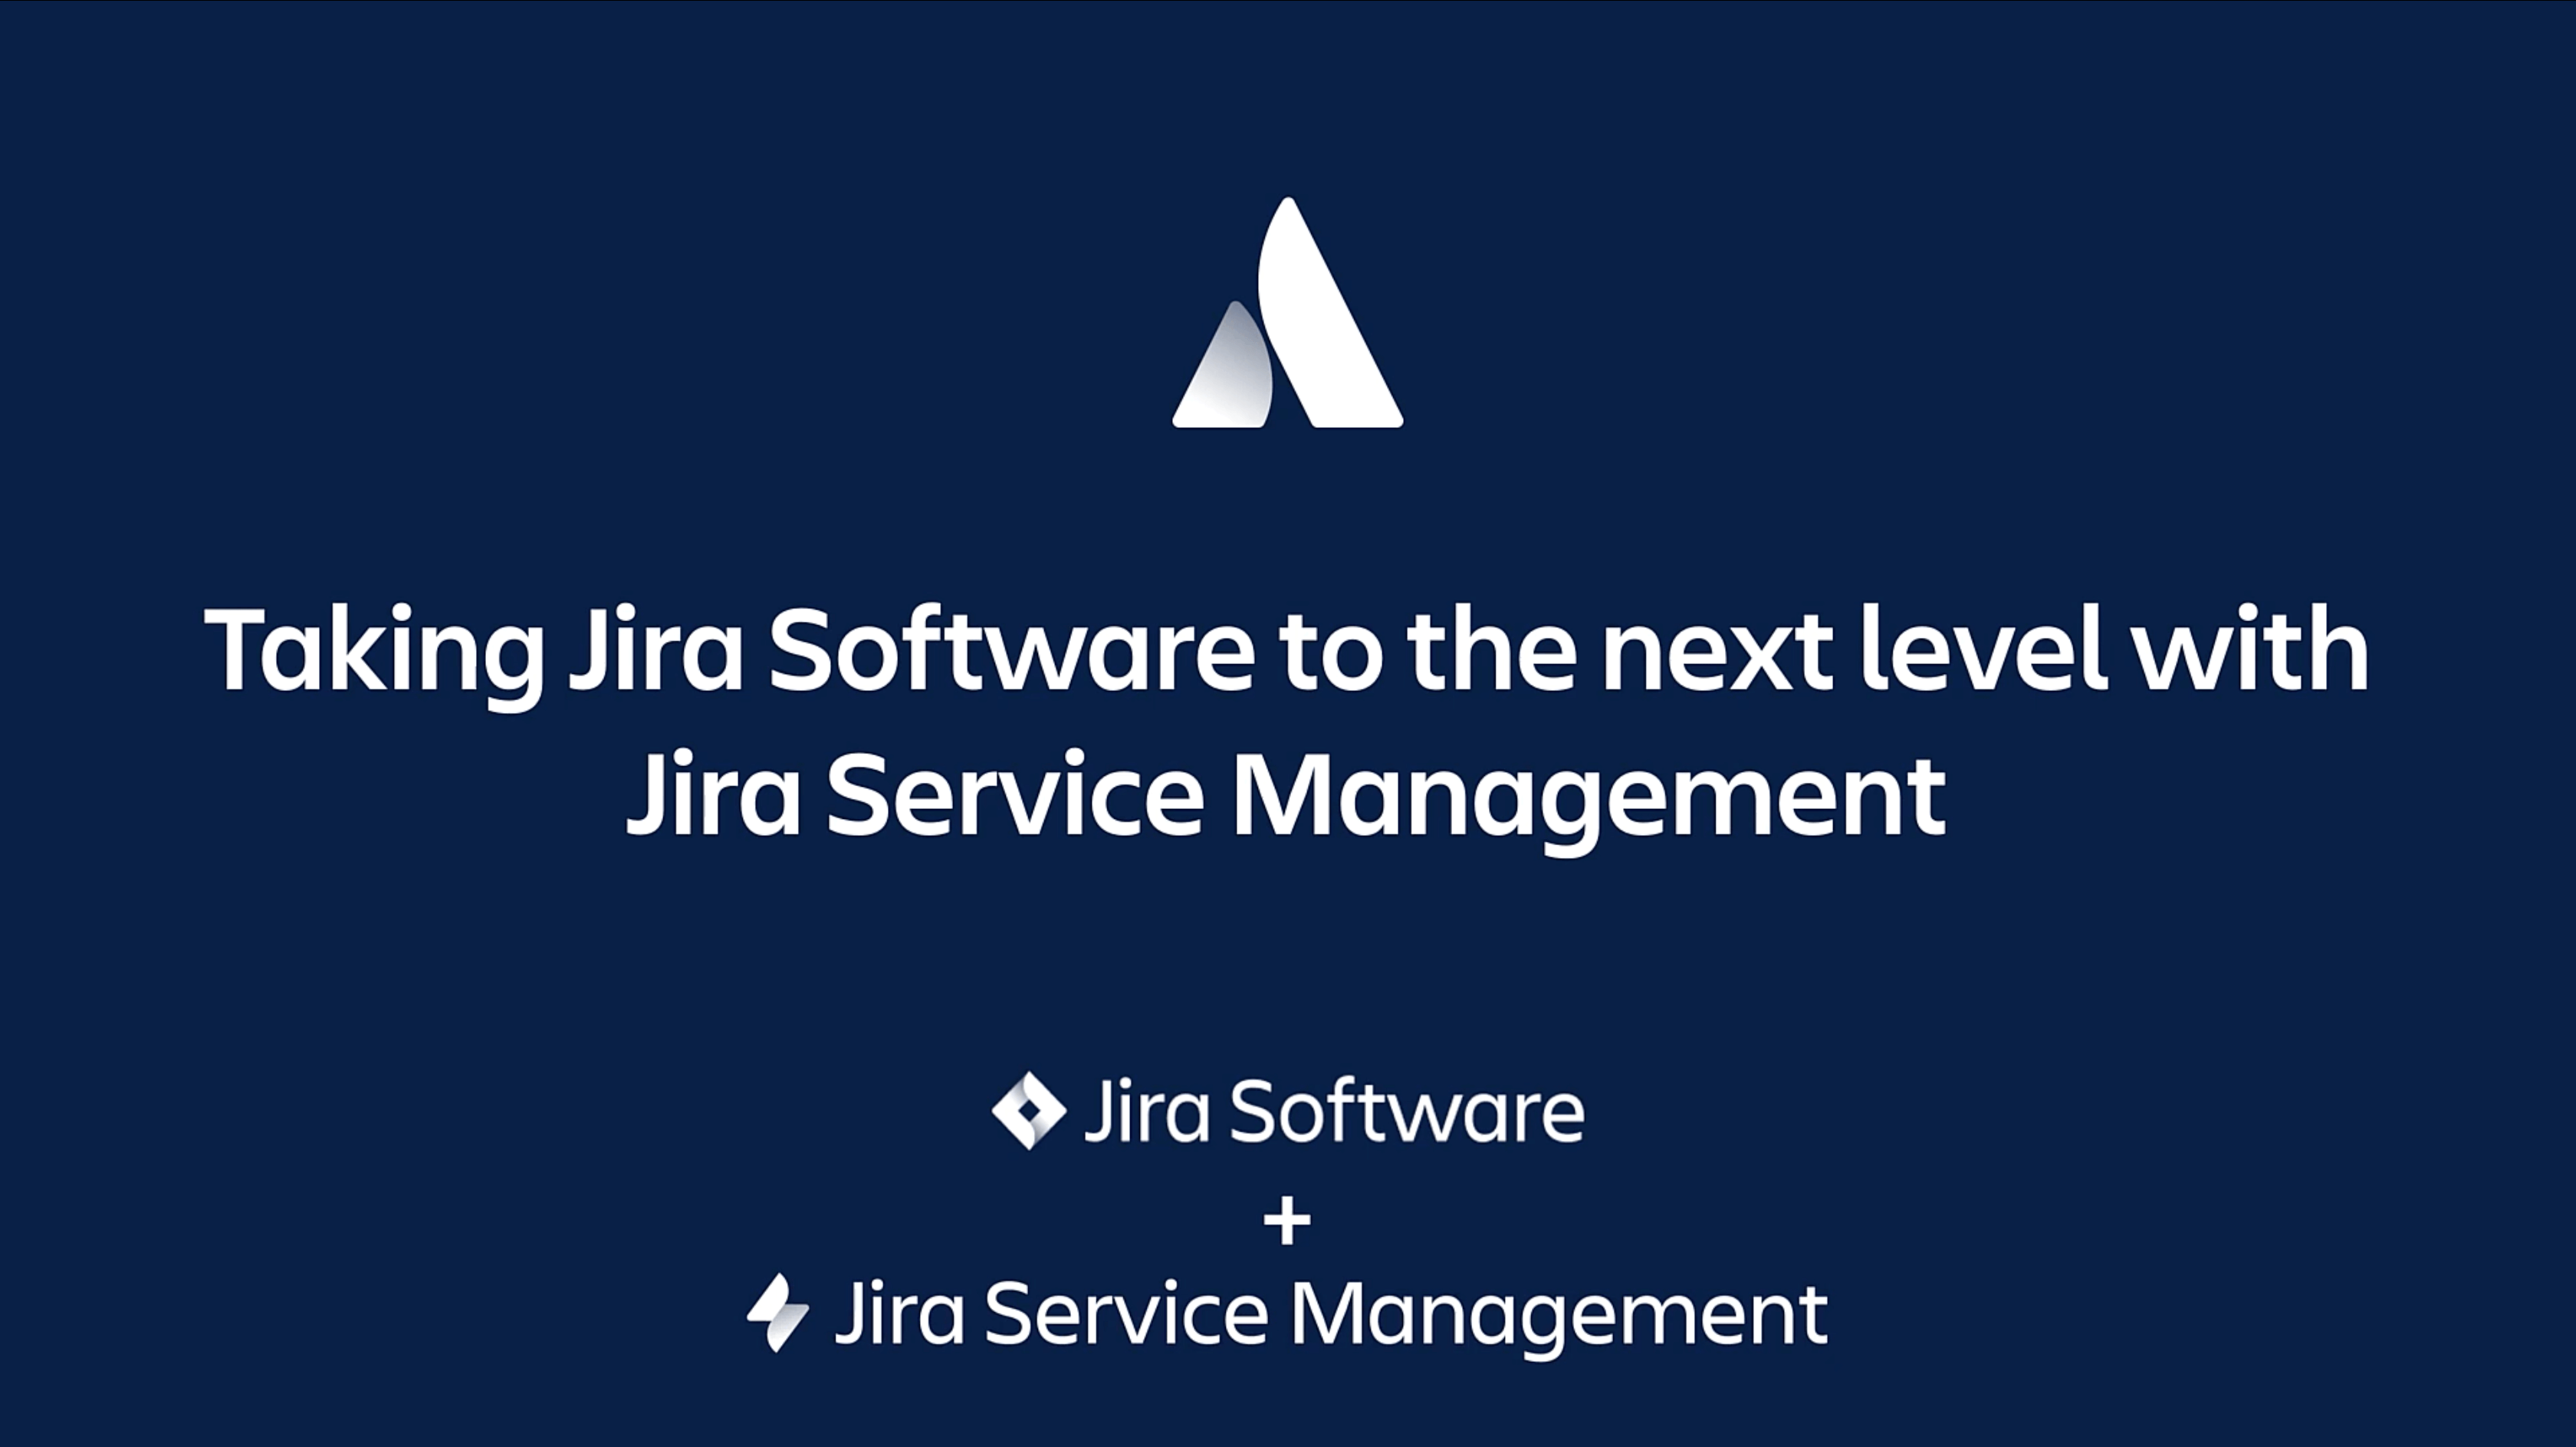 Jira Software: fai un salto di qualità con Jira Service Management